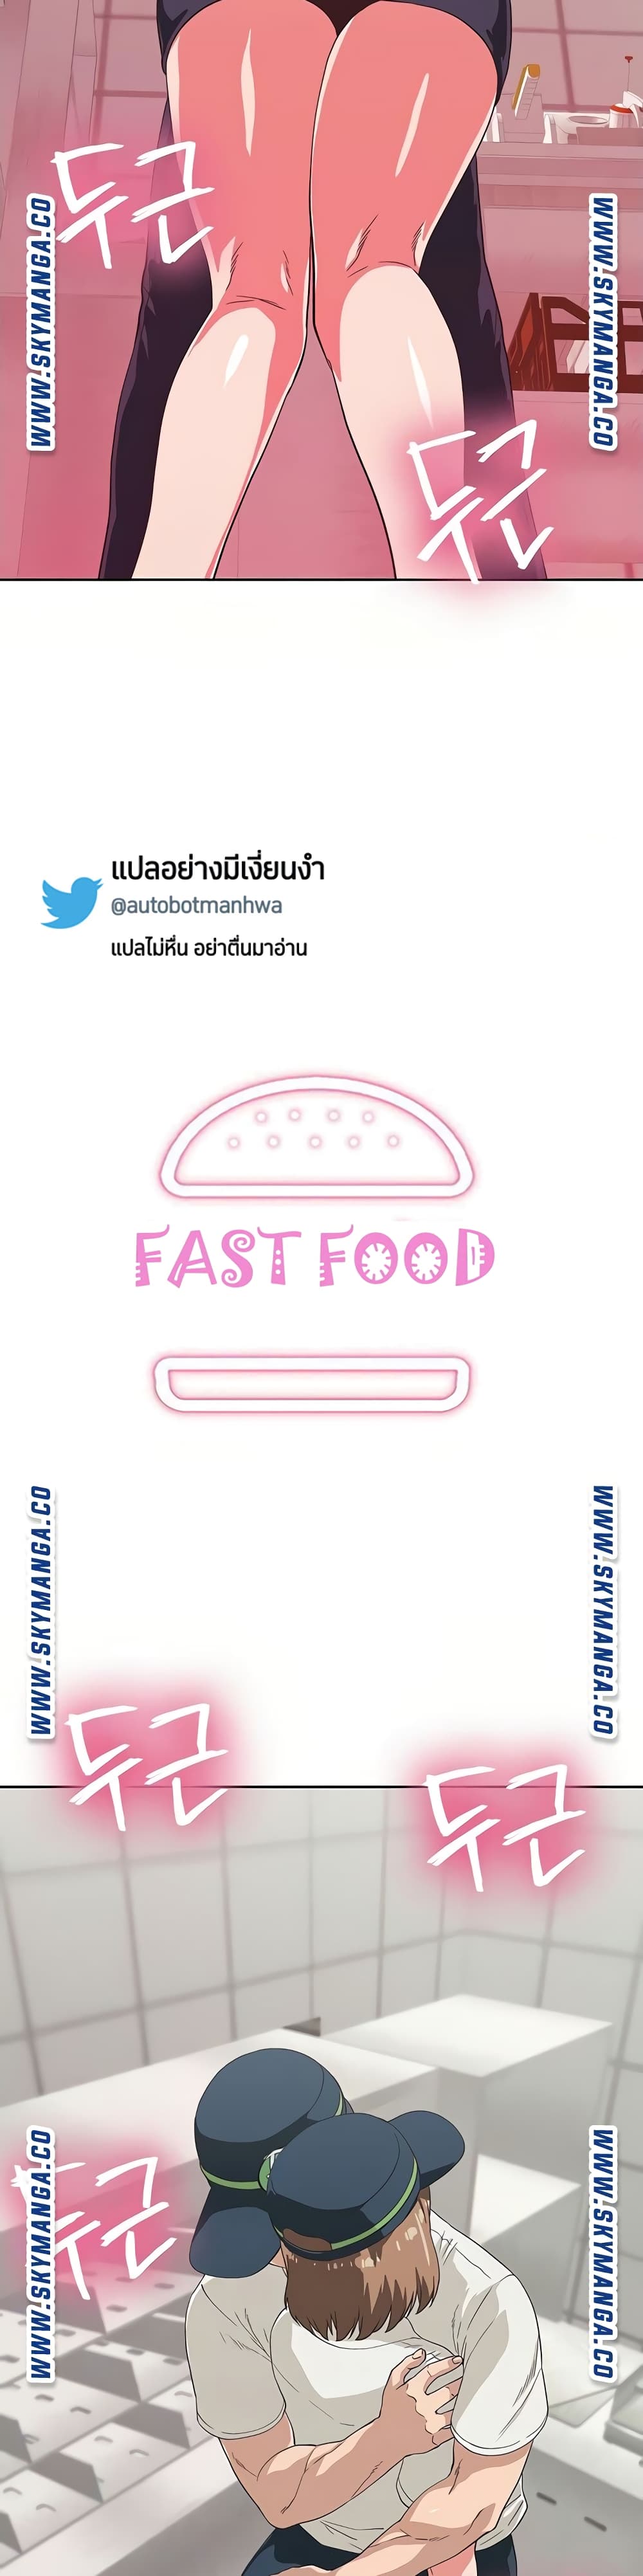 Fast Food 10-10